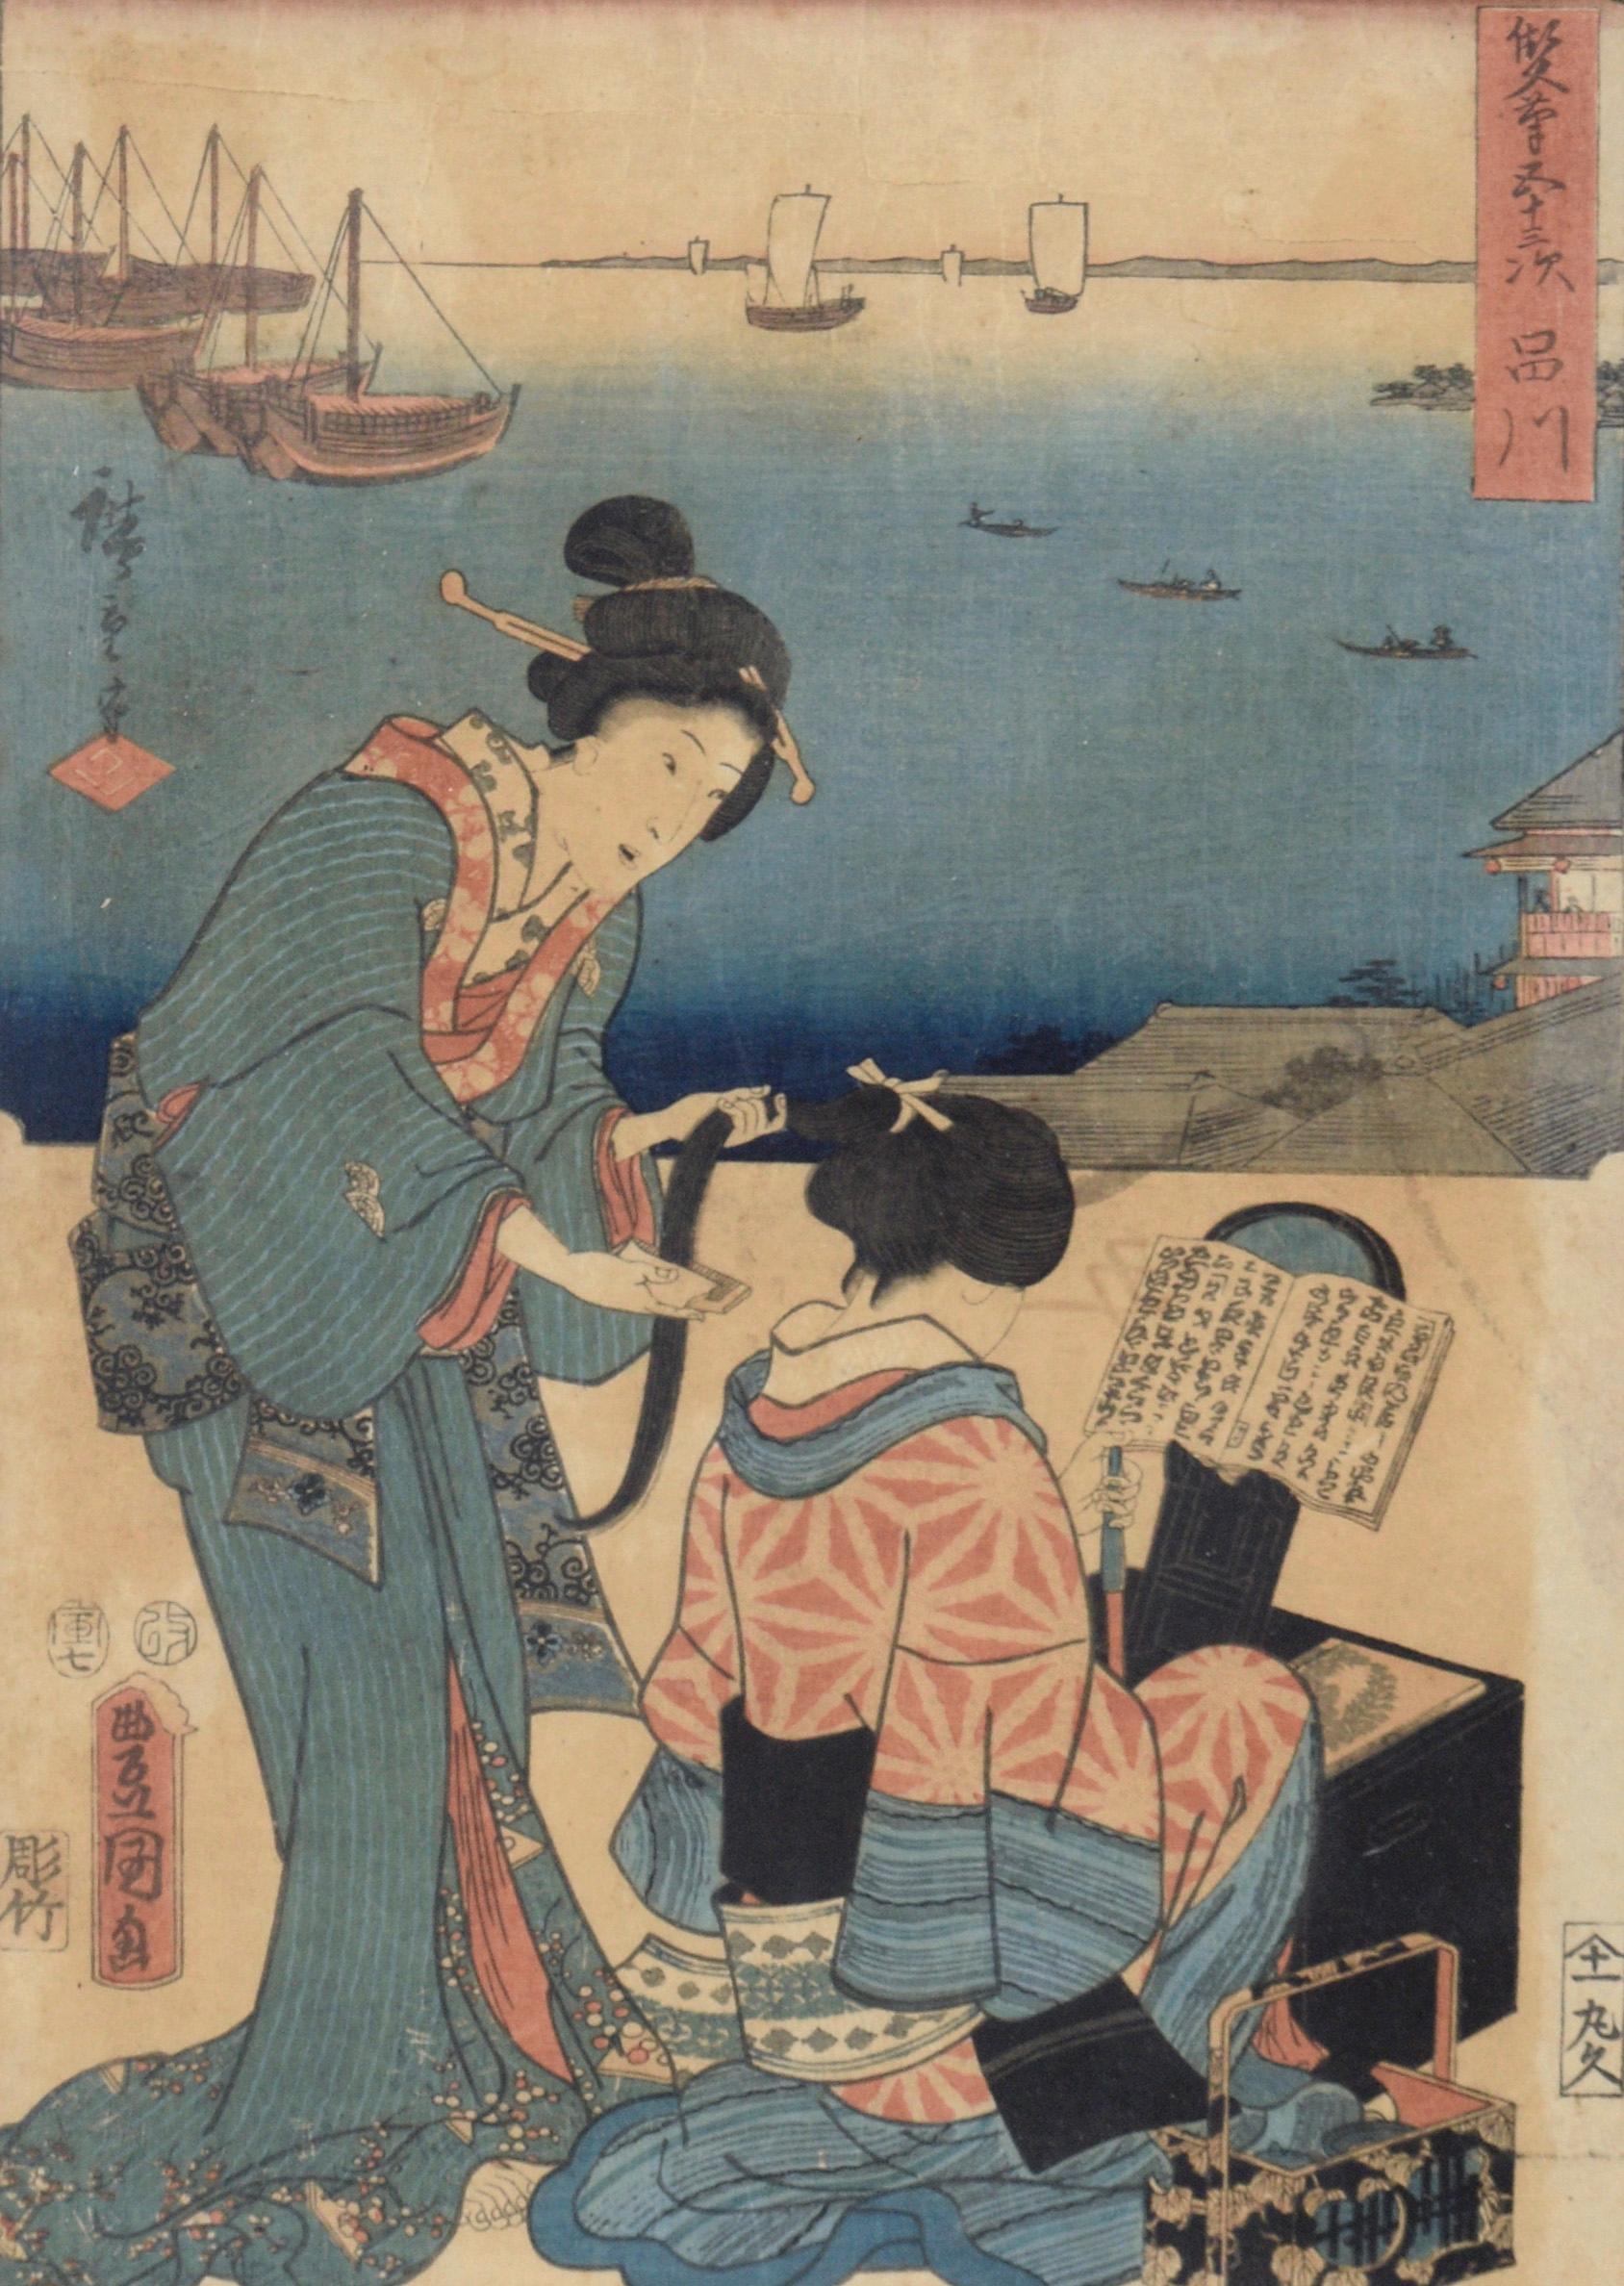 Dressing Room 53 Stations of Tokaido - Woodblock Utagawa Hiroshige and Kunisada - Print by Utagawa Kunisada (Toyokuni III)